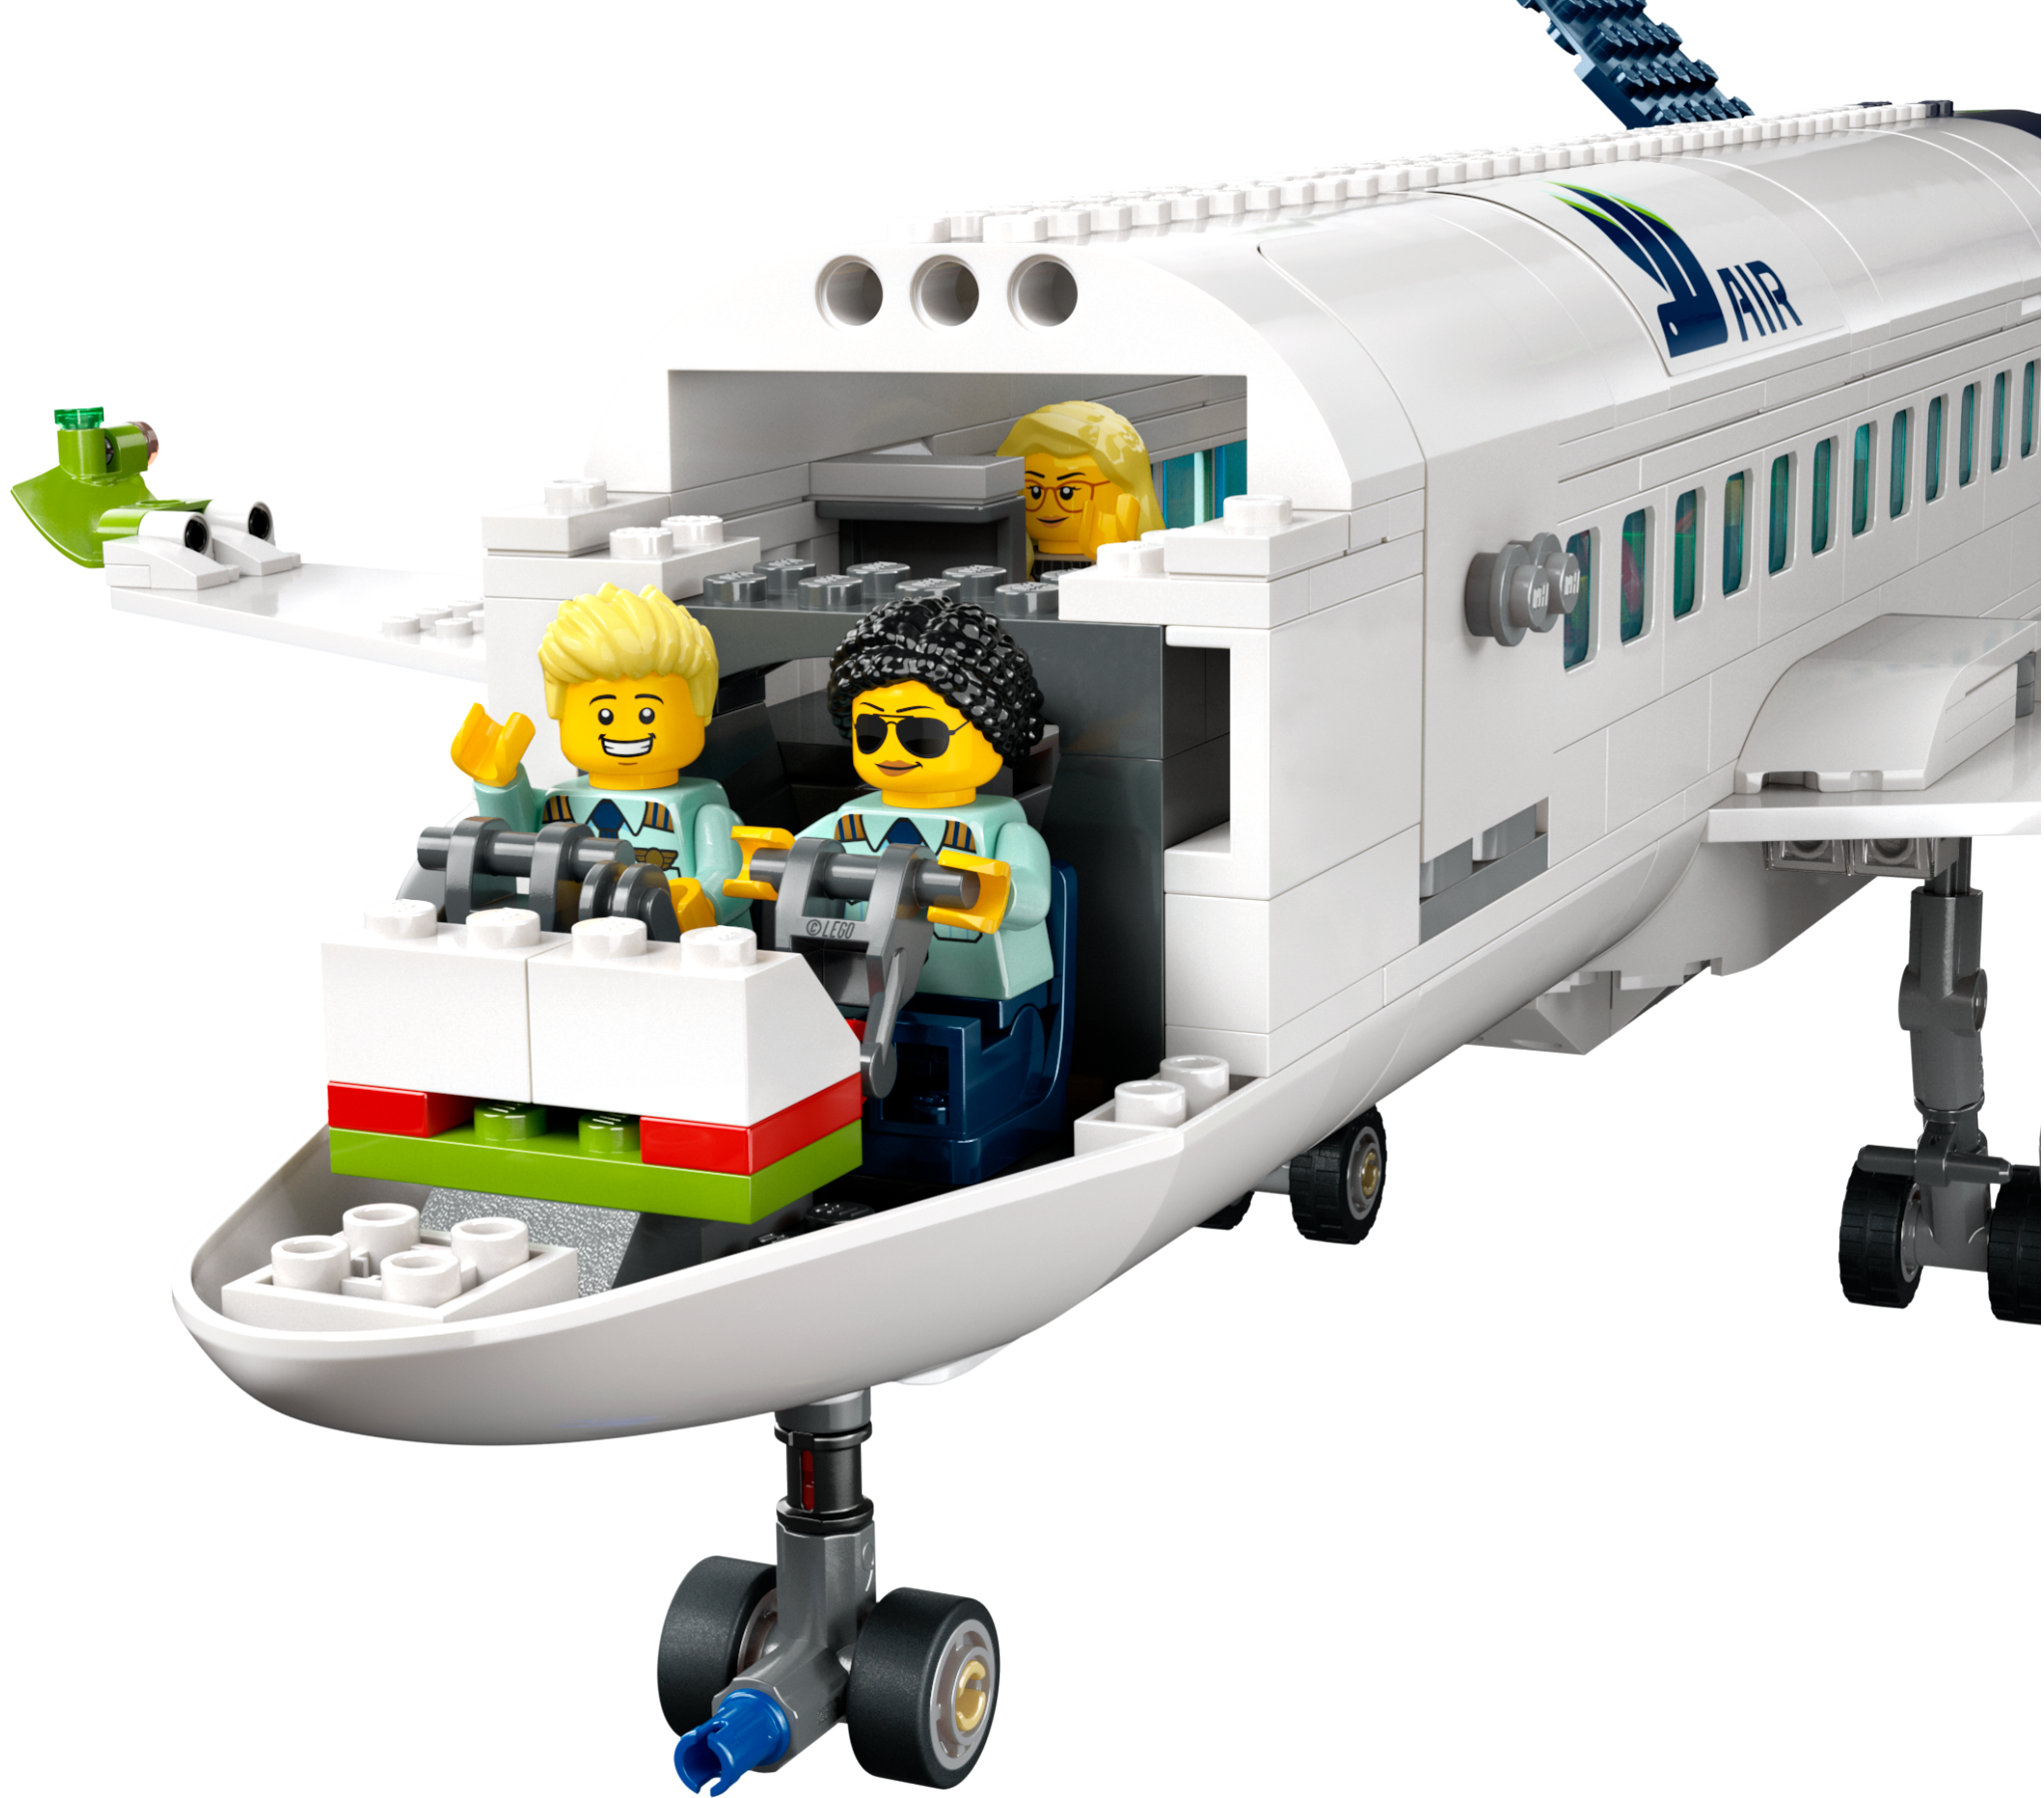 Comprar Lego Creator - Avión de Hélice de LEGO- Kidylusion